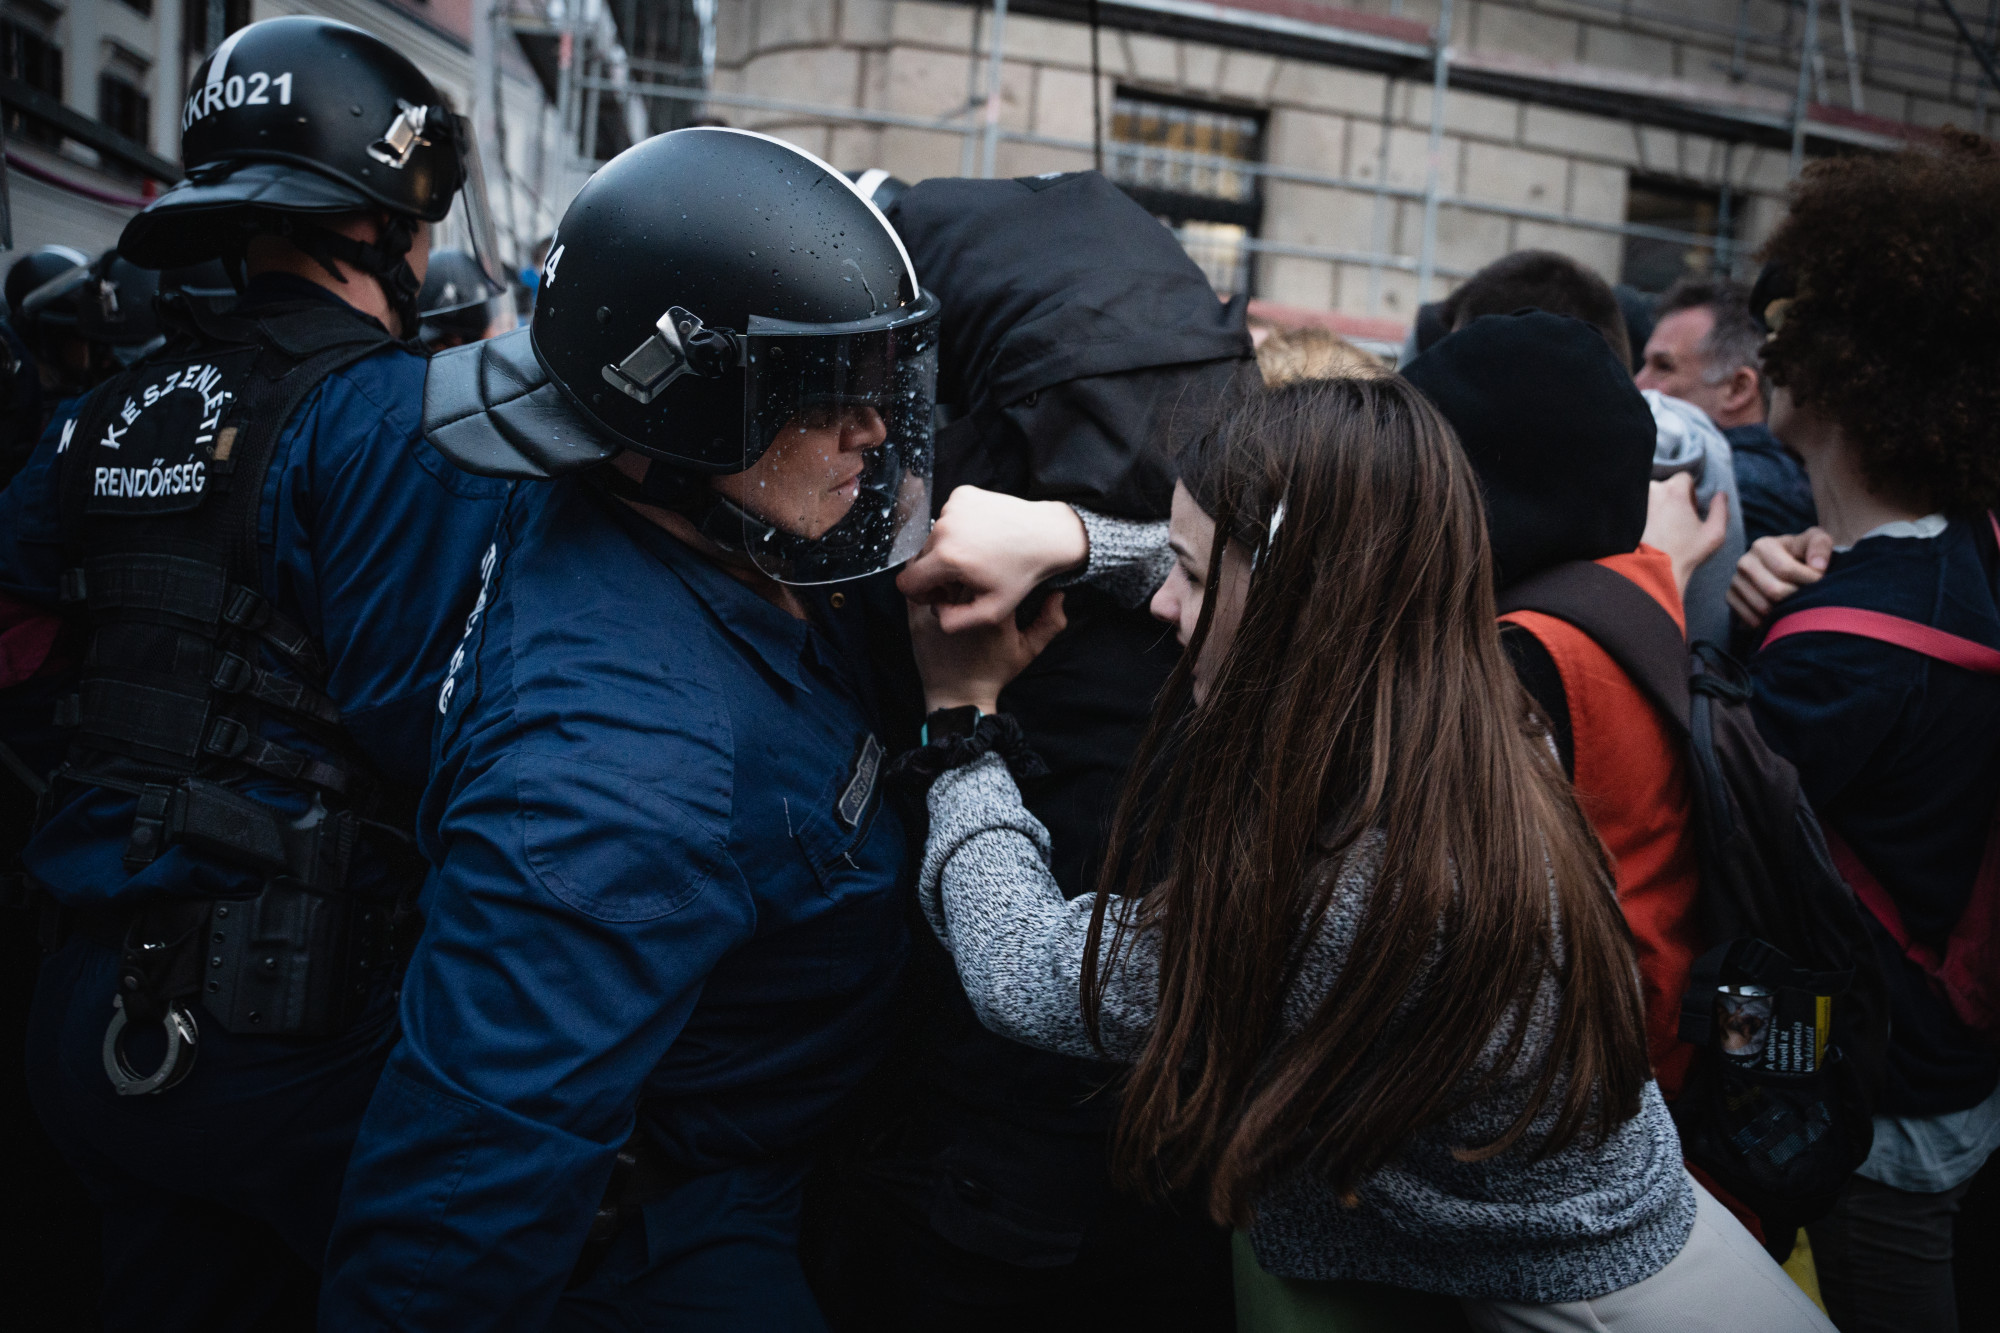 Kilenc fiatal ellen indítottak eljárást, mert eltakarták az arcukat a Karmelitánál